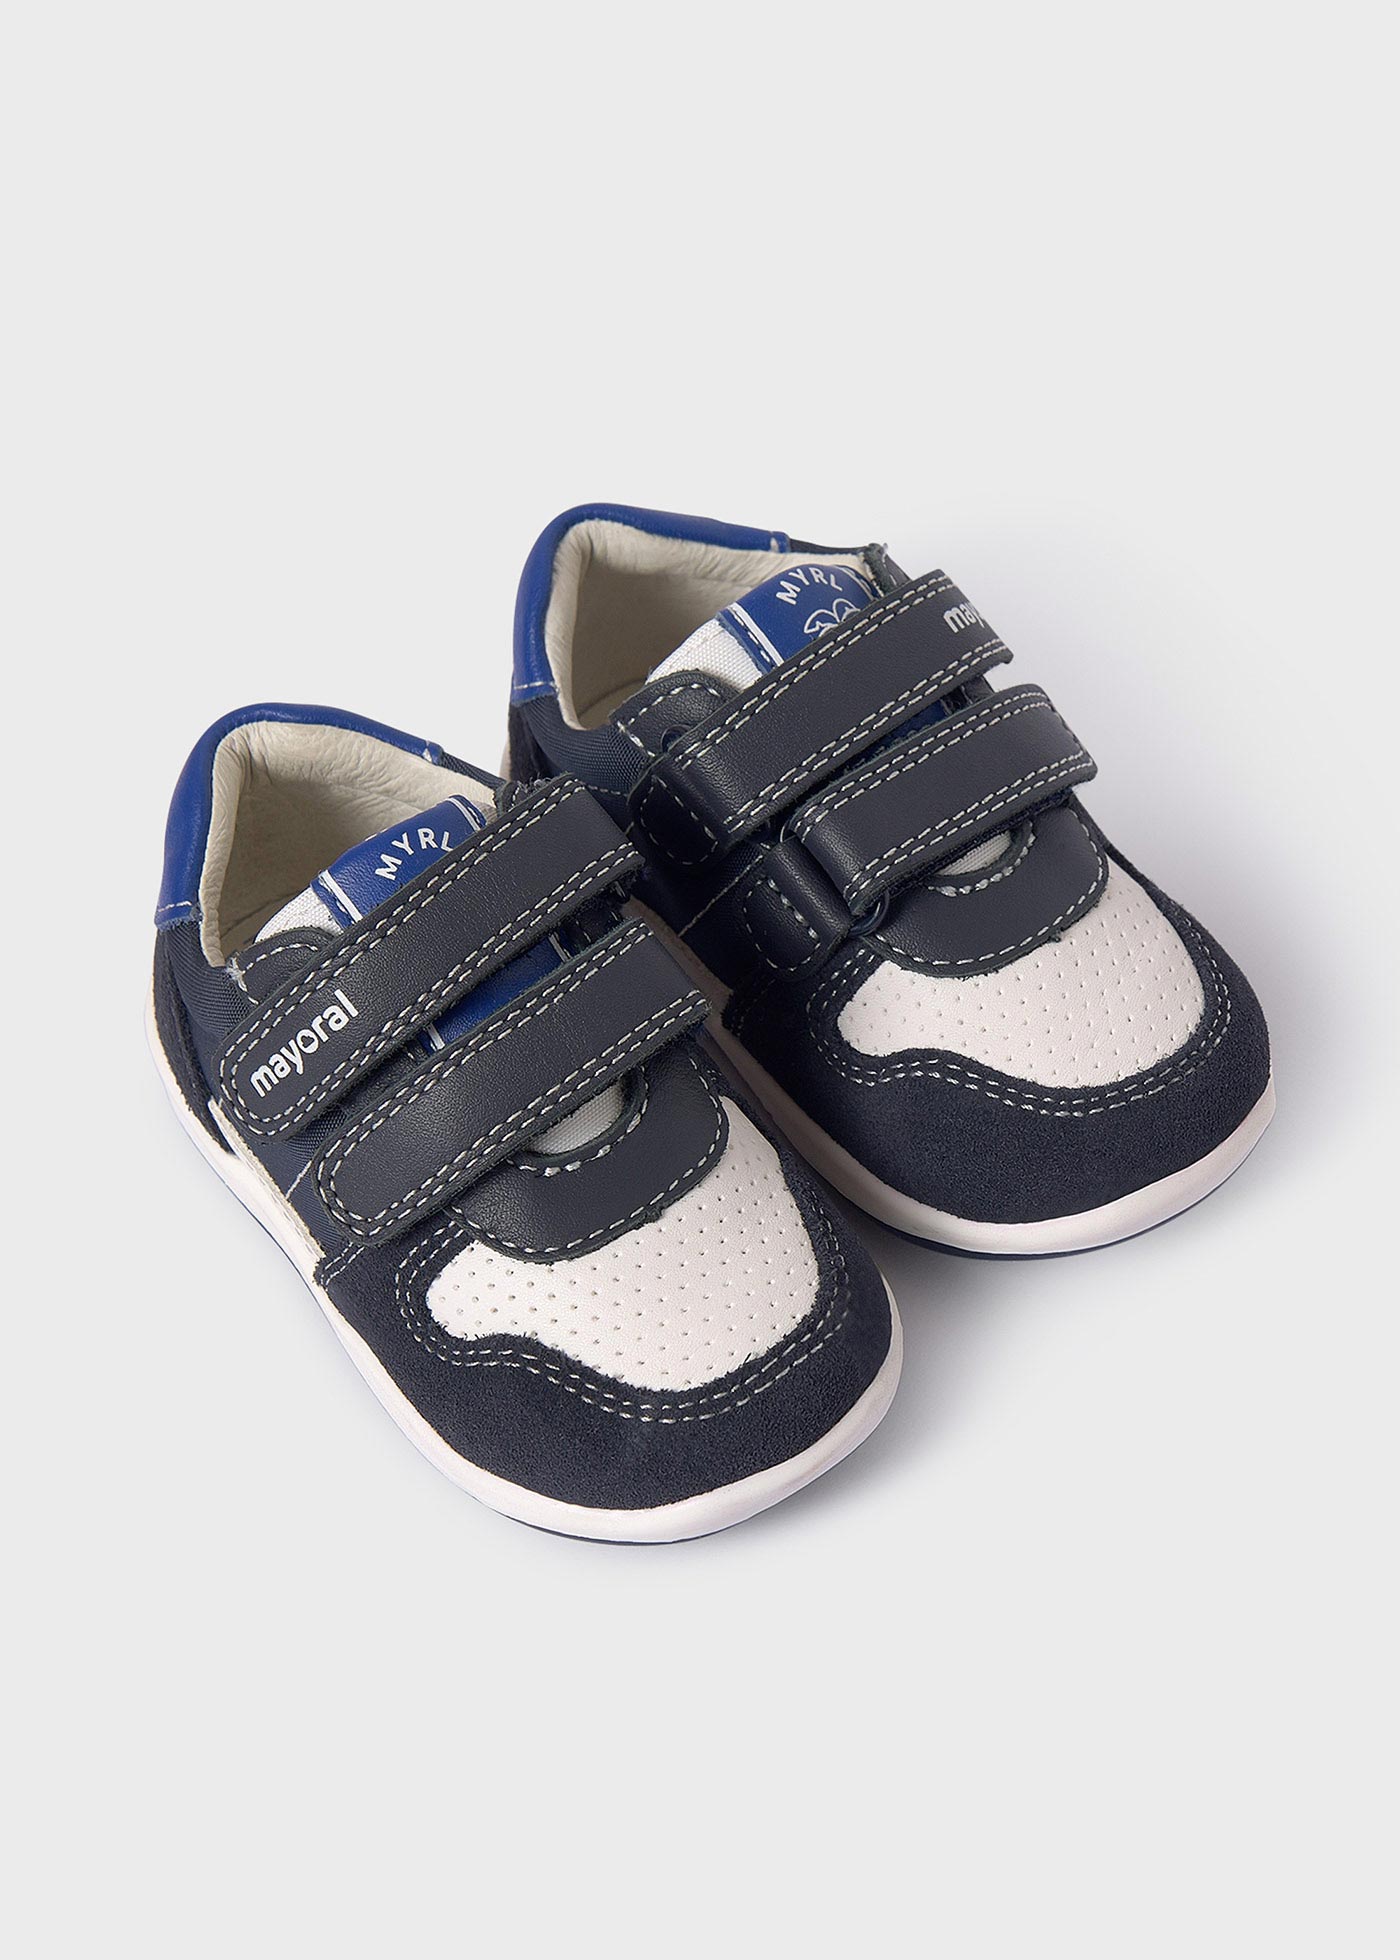 Chaussures double velcro cuir durable bébé